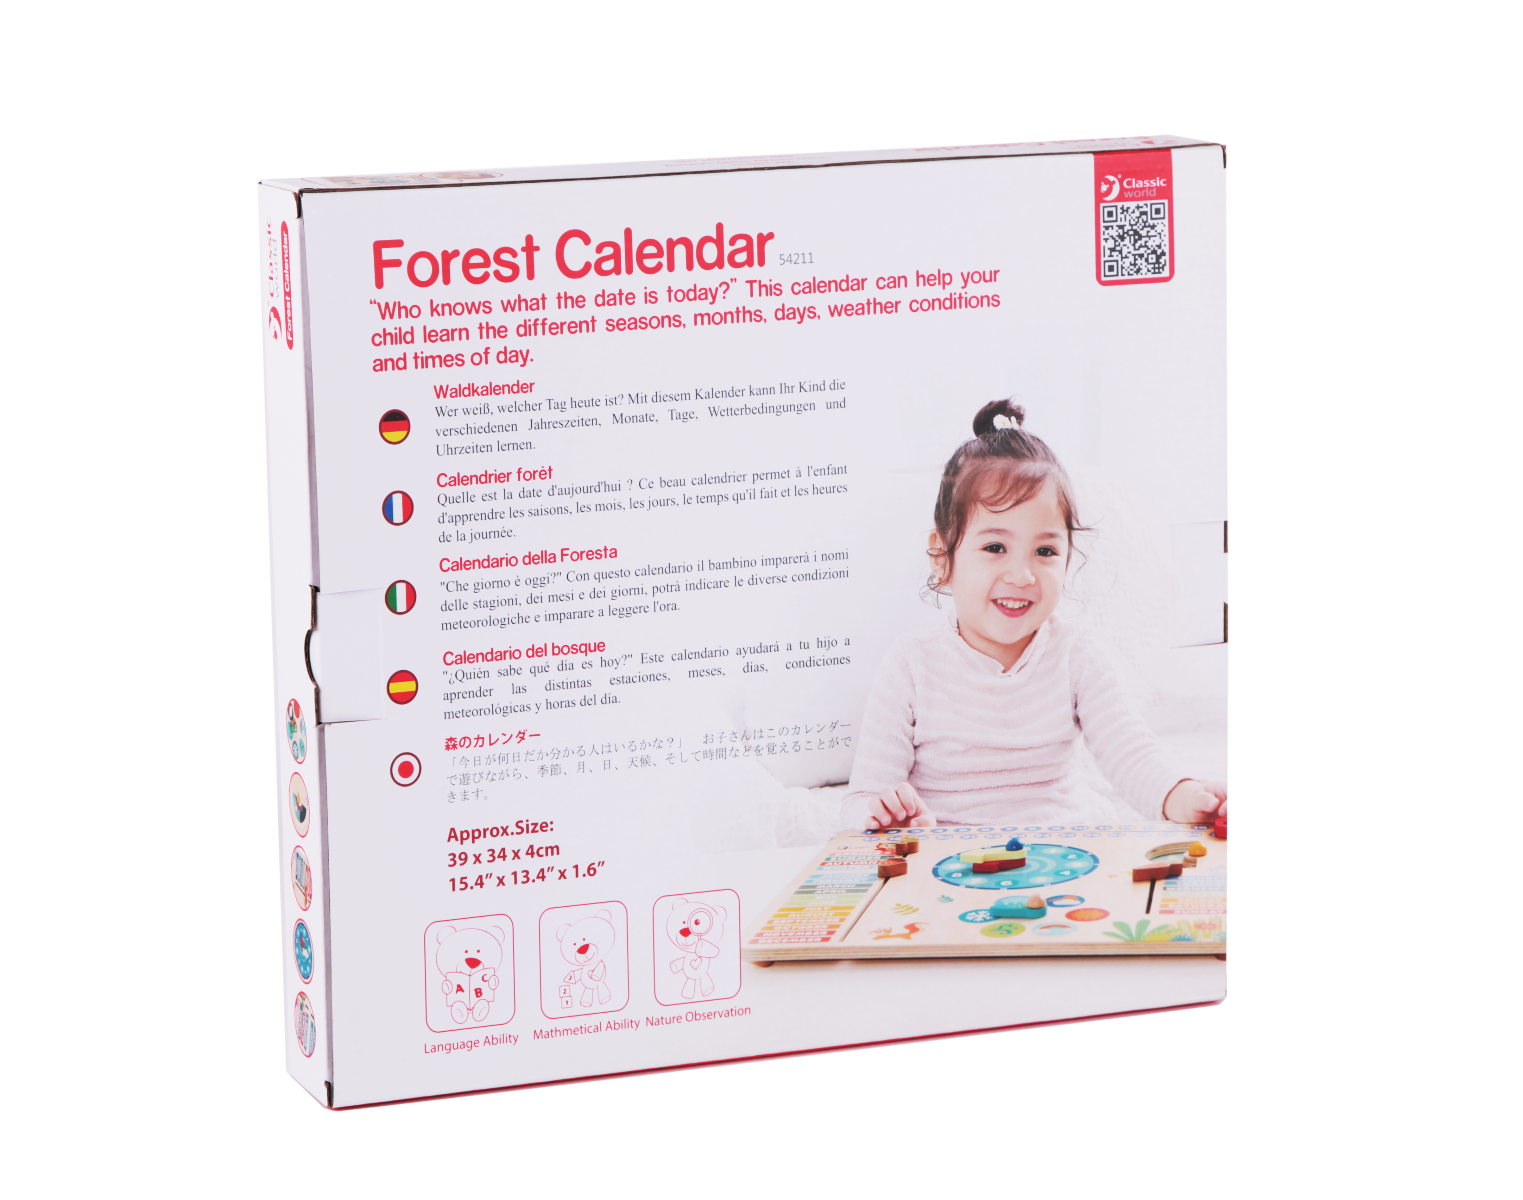 Classic World Forest Calendar